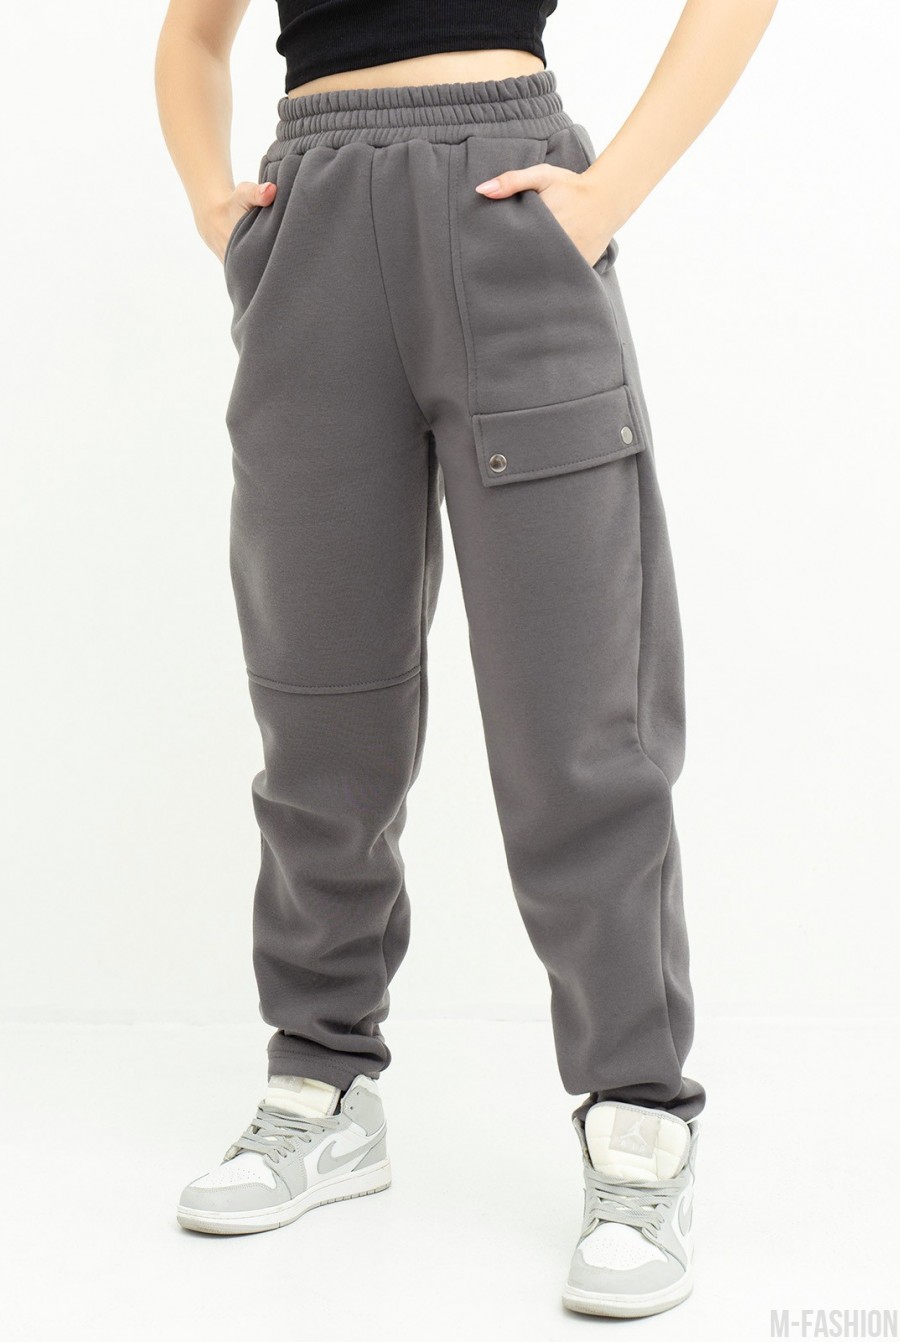 Серые теплые спортивные штаны с клапаном - Фото 1